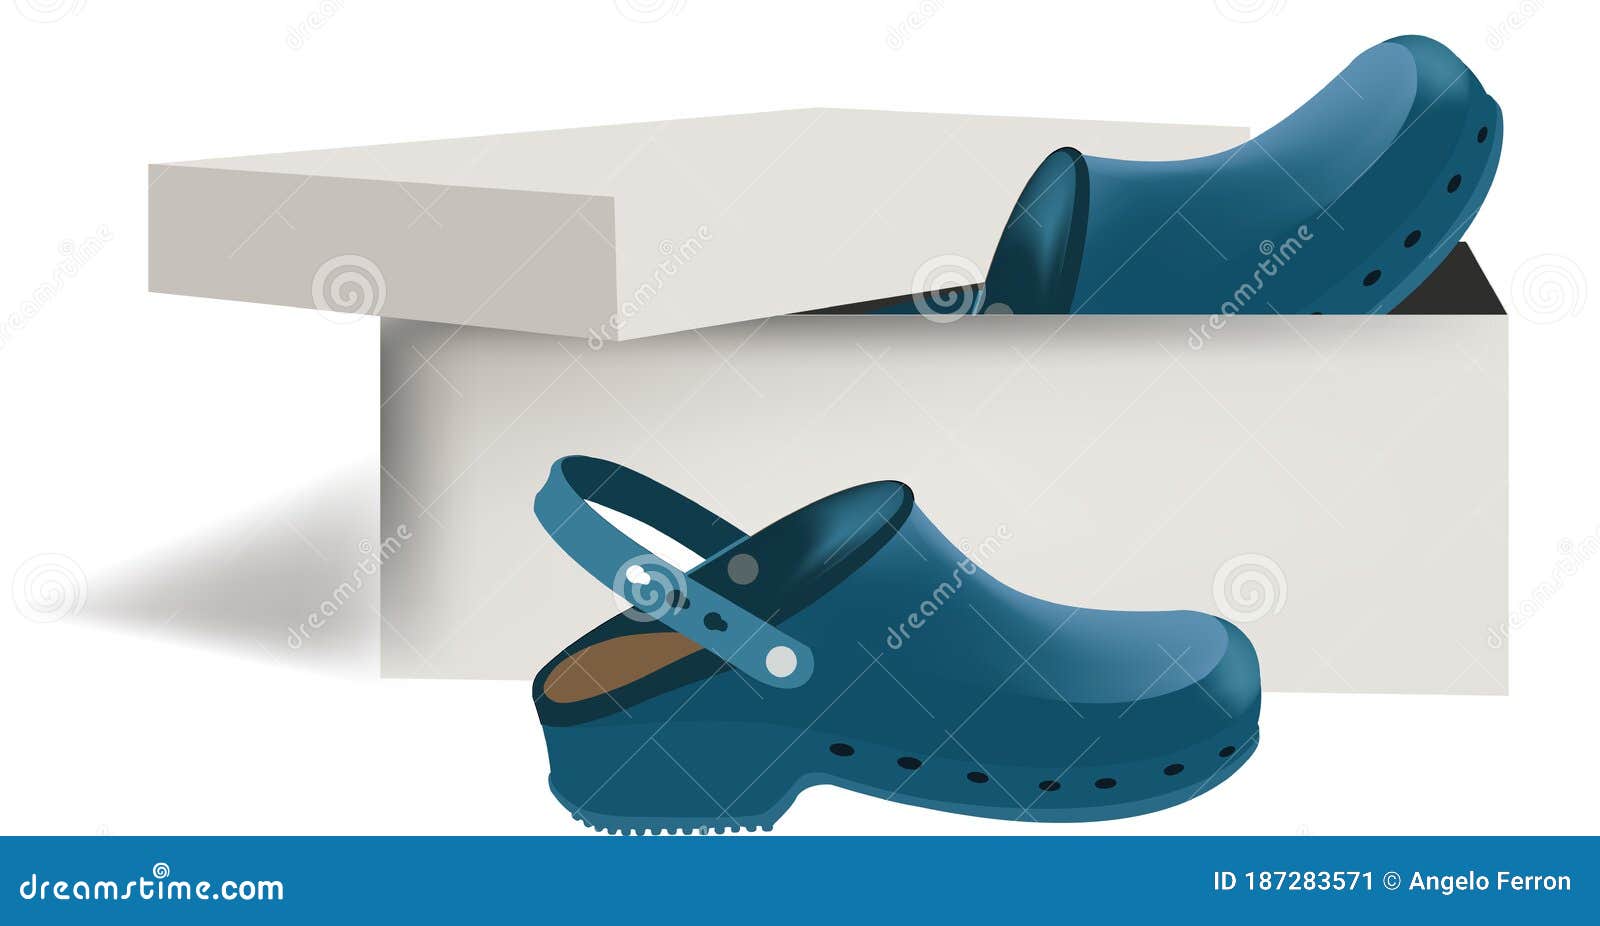 orthopedic footwear for hospital use